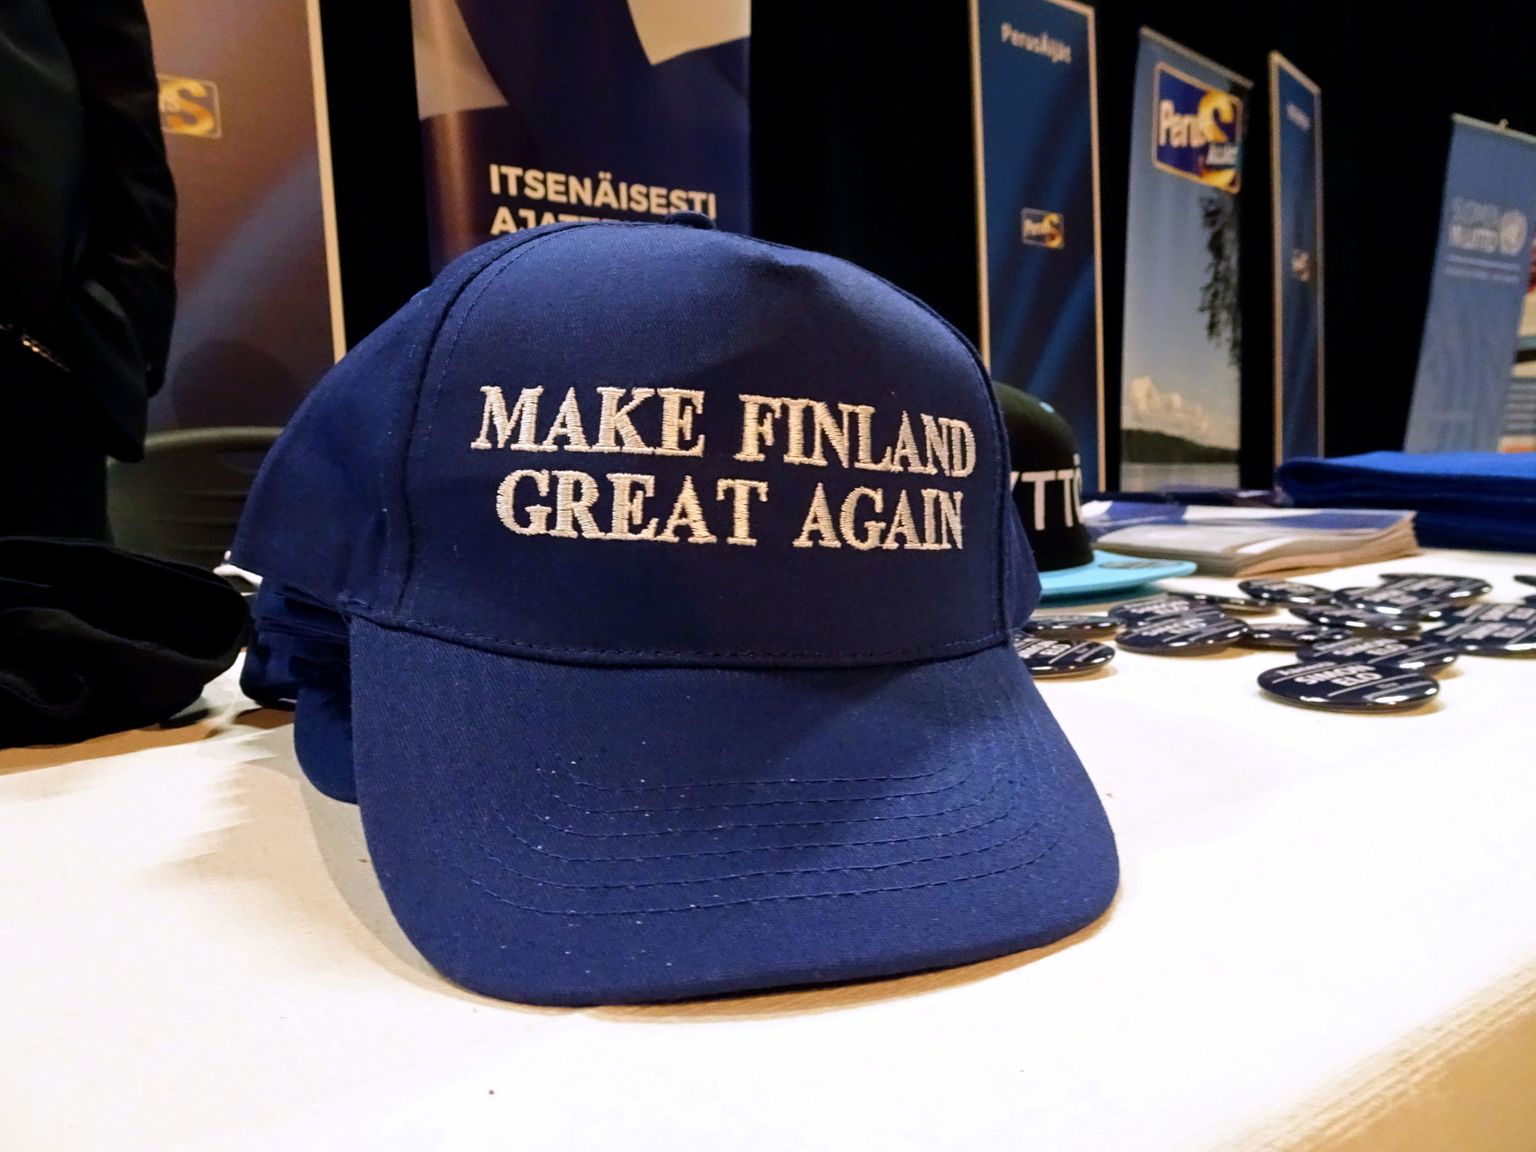 Põlissoomlaste noorteorganisatsiooni meened müügil erakonna juunikuisel kongressil Jyväskyläs.